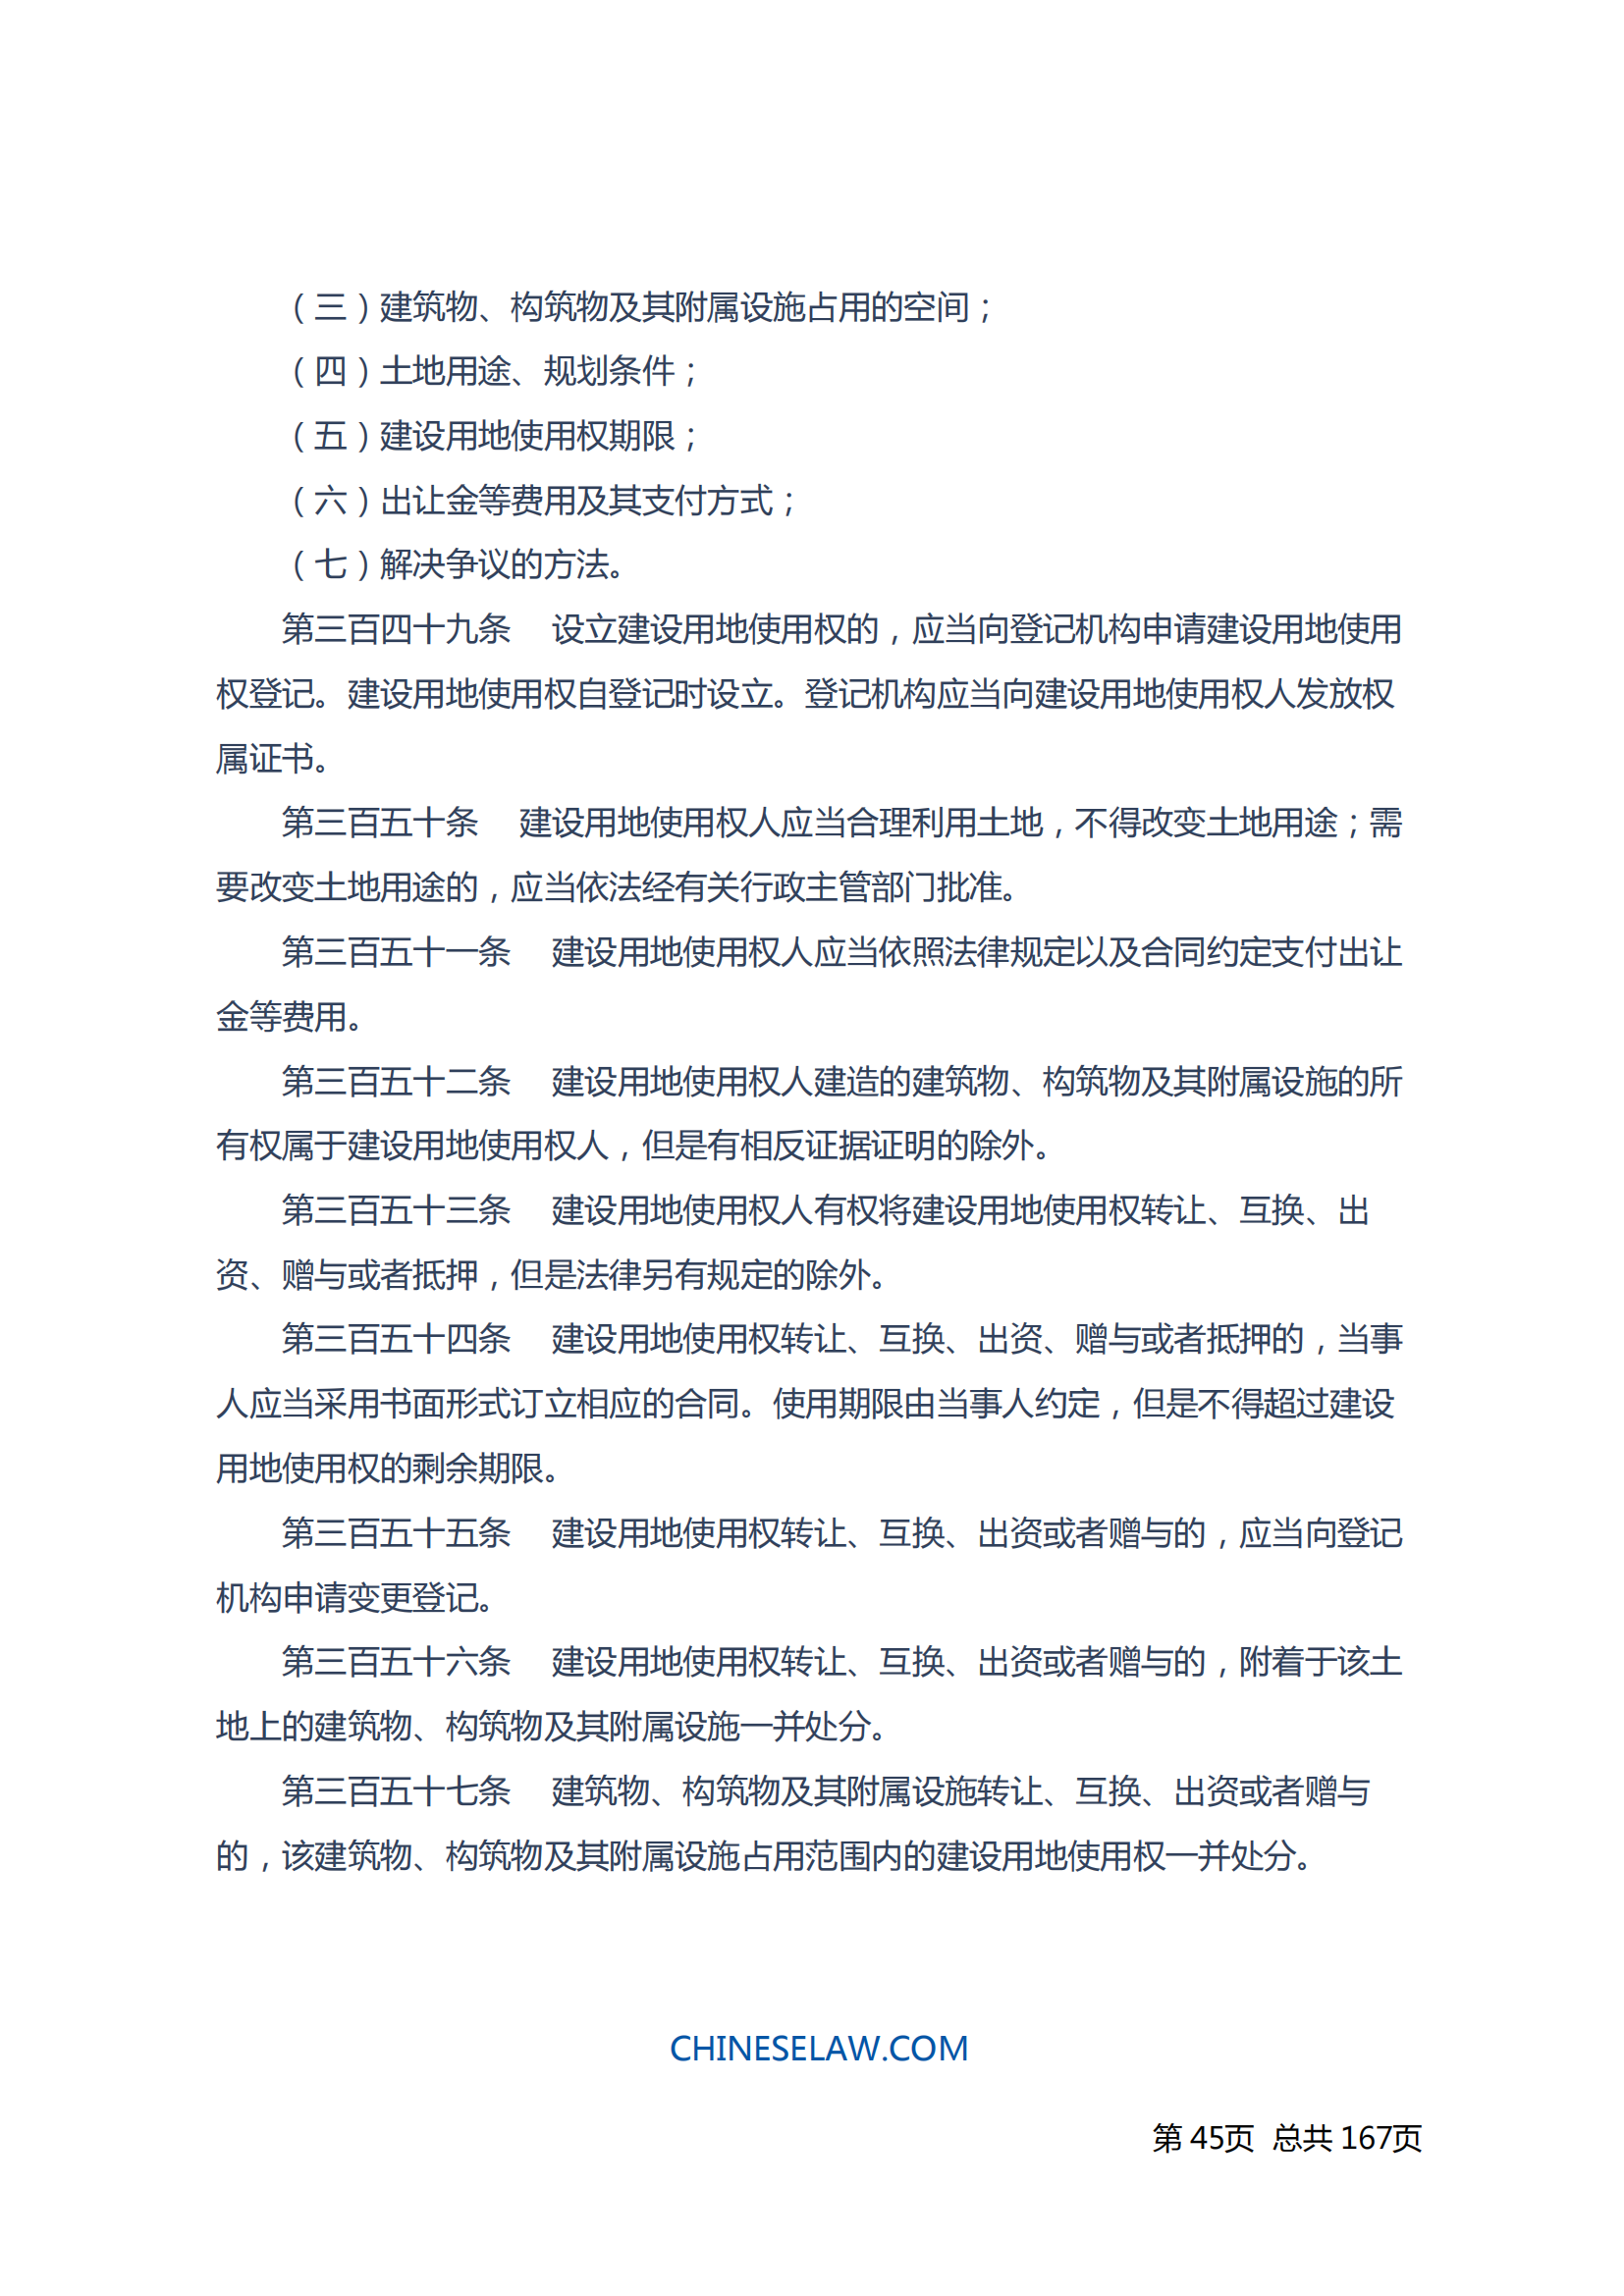 中华人民共和国民法典_44